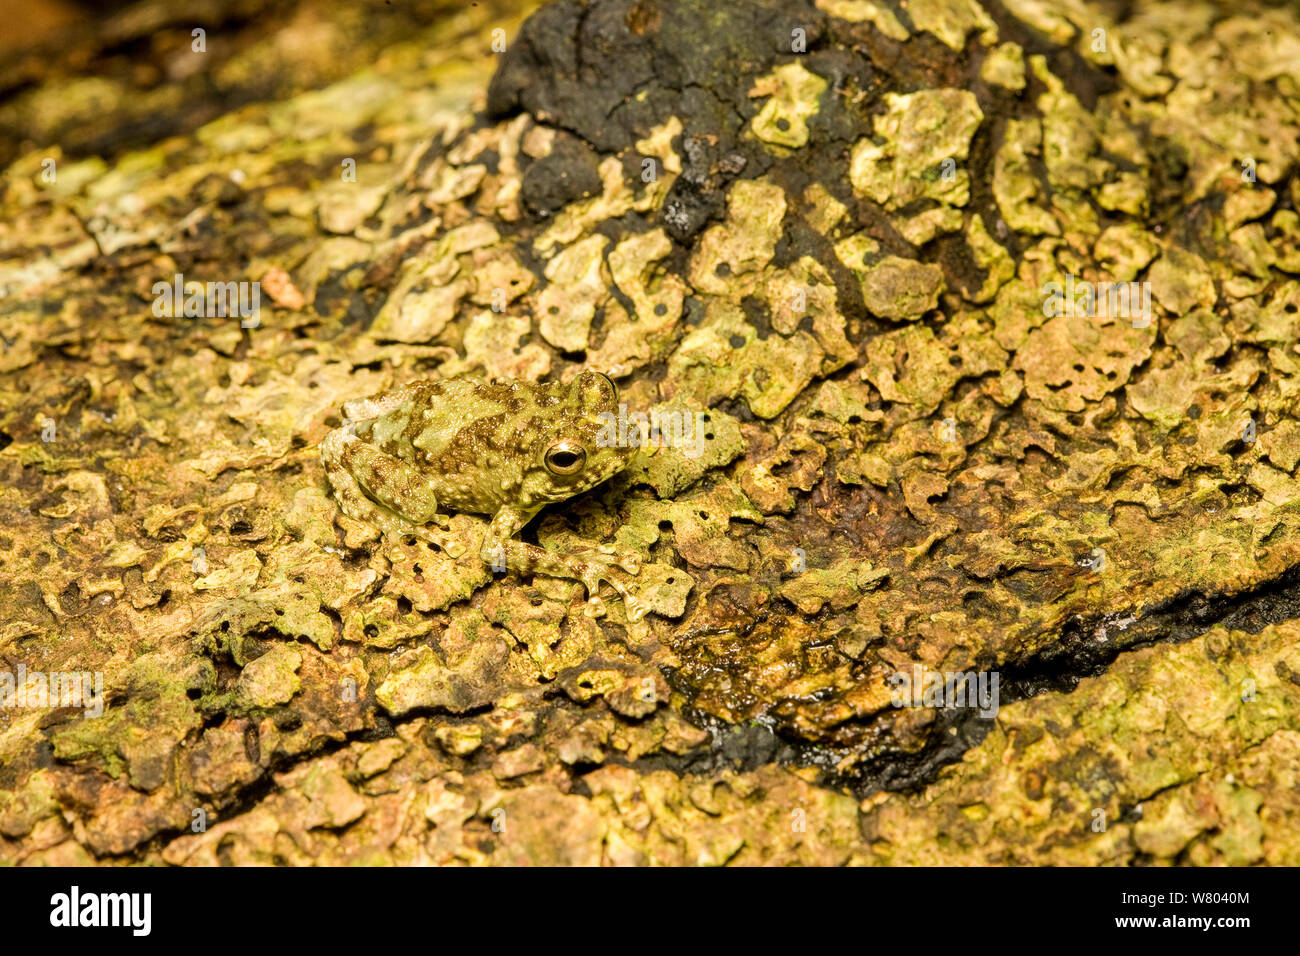 Webb&# 39;s madagascar frog (Gephyromantis webbi) camouflé de lichens, Nosy Mangabe, Madagascar. Les espèces en voie de disparition. Banque D'Images